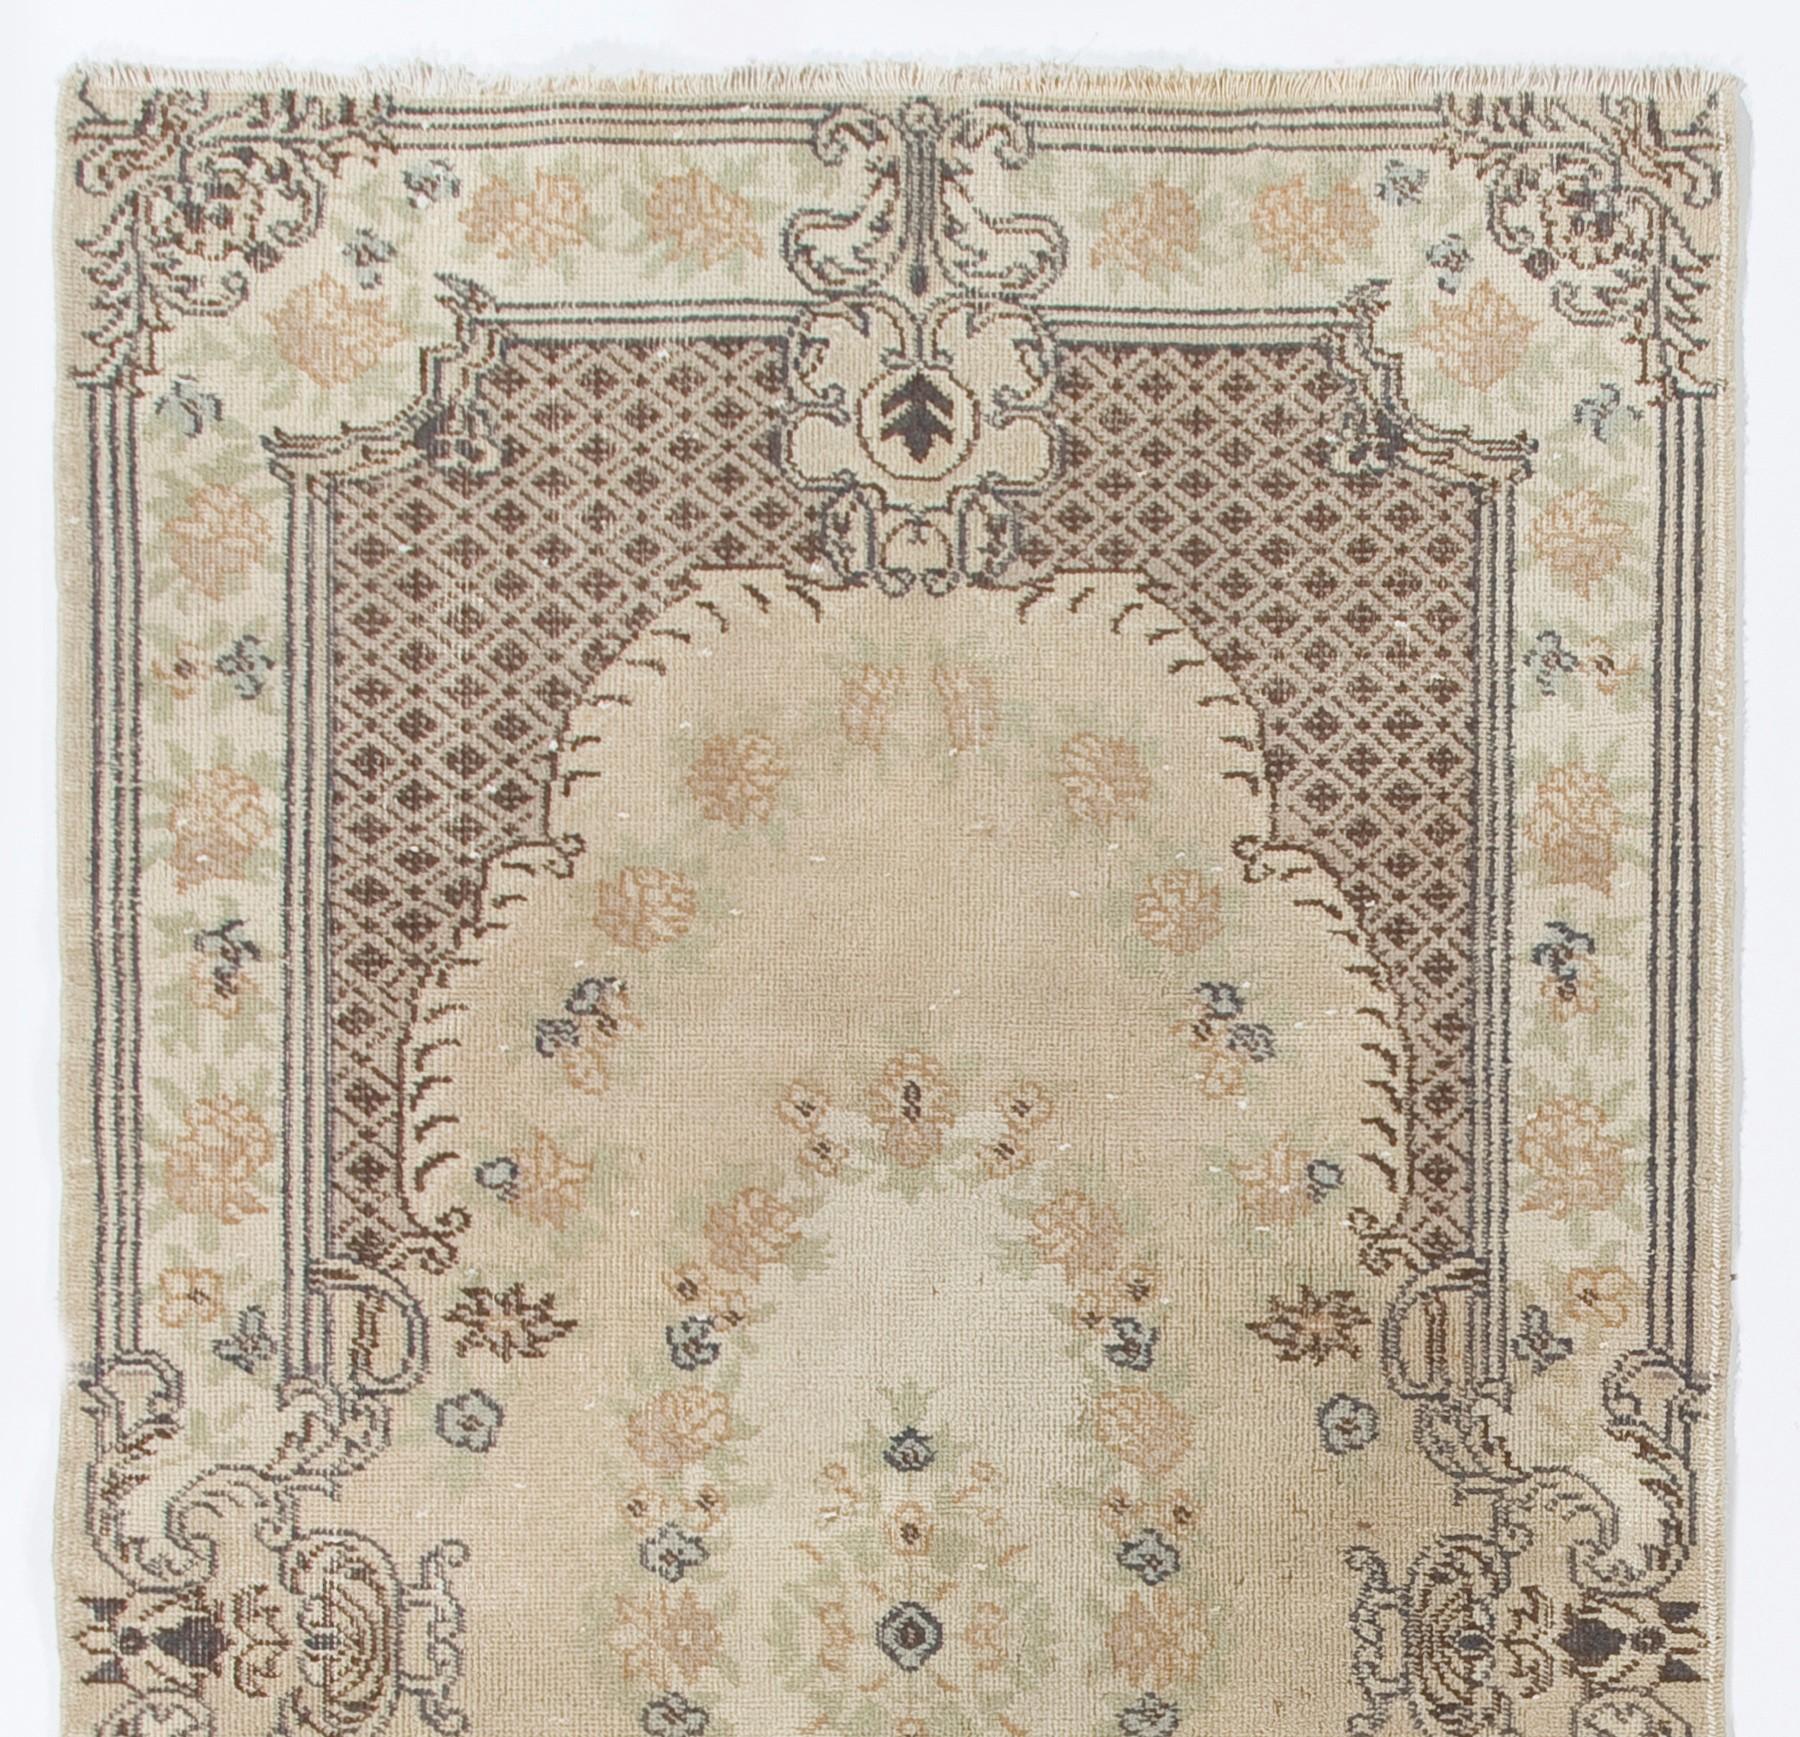 Ein fein handgeknüpfter Teppich aus der Mitte des 20. Jahrhunderts aus Zentralwestanatolien mit weichen Farben und niedrigem Wollflor auf Baumwollgrund. Es zeichnet sich durch ein französisch inspiriertes Blumendesign in sanften, neutralen Tönen wie